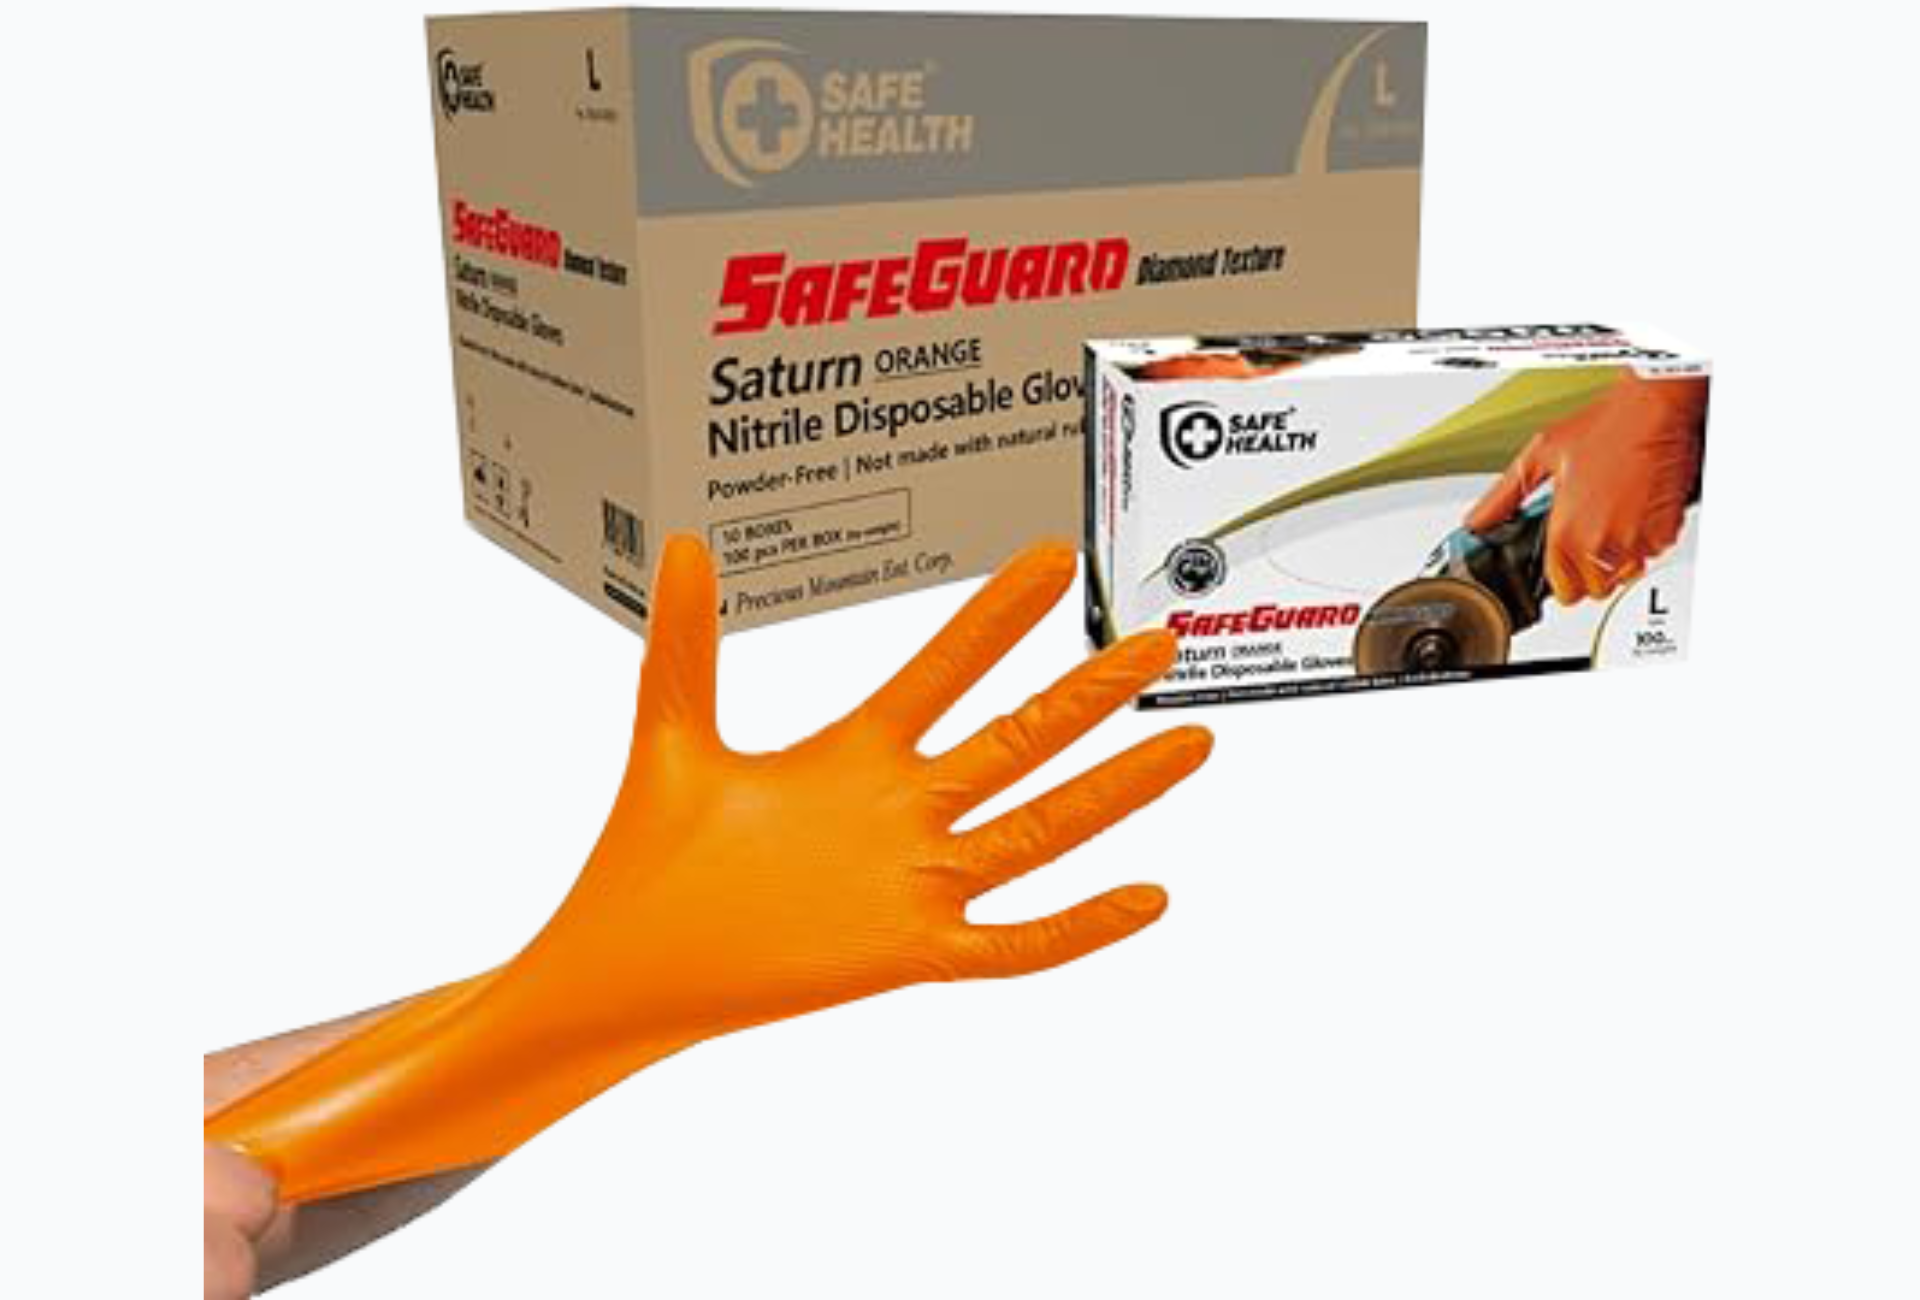 Saturn Diamond Texture Disposable Gloves